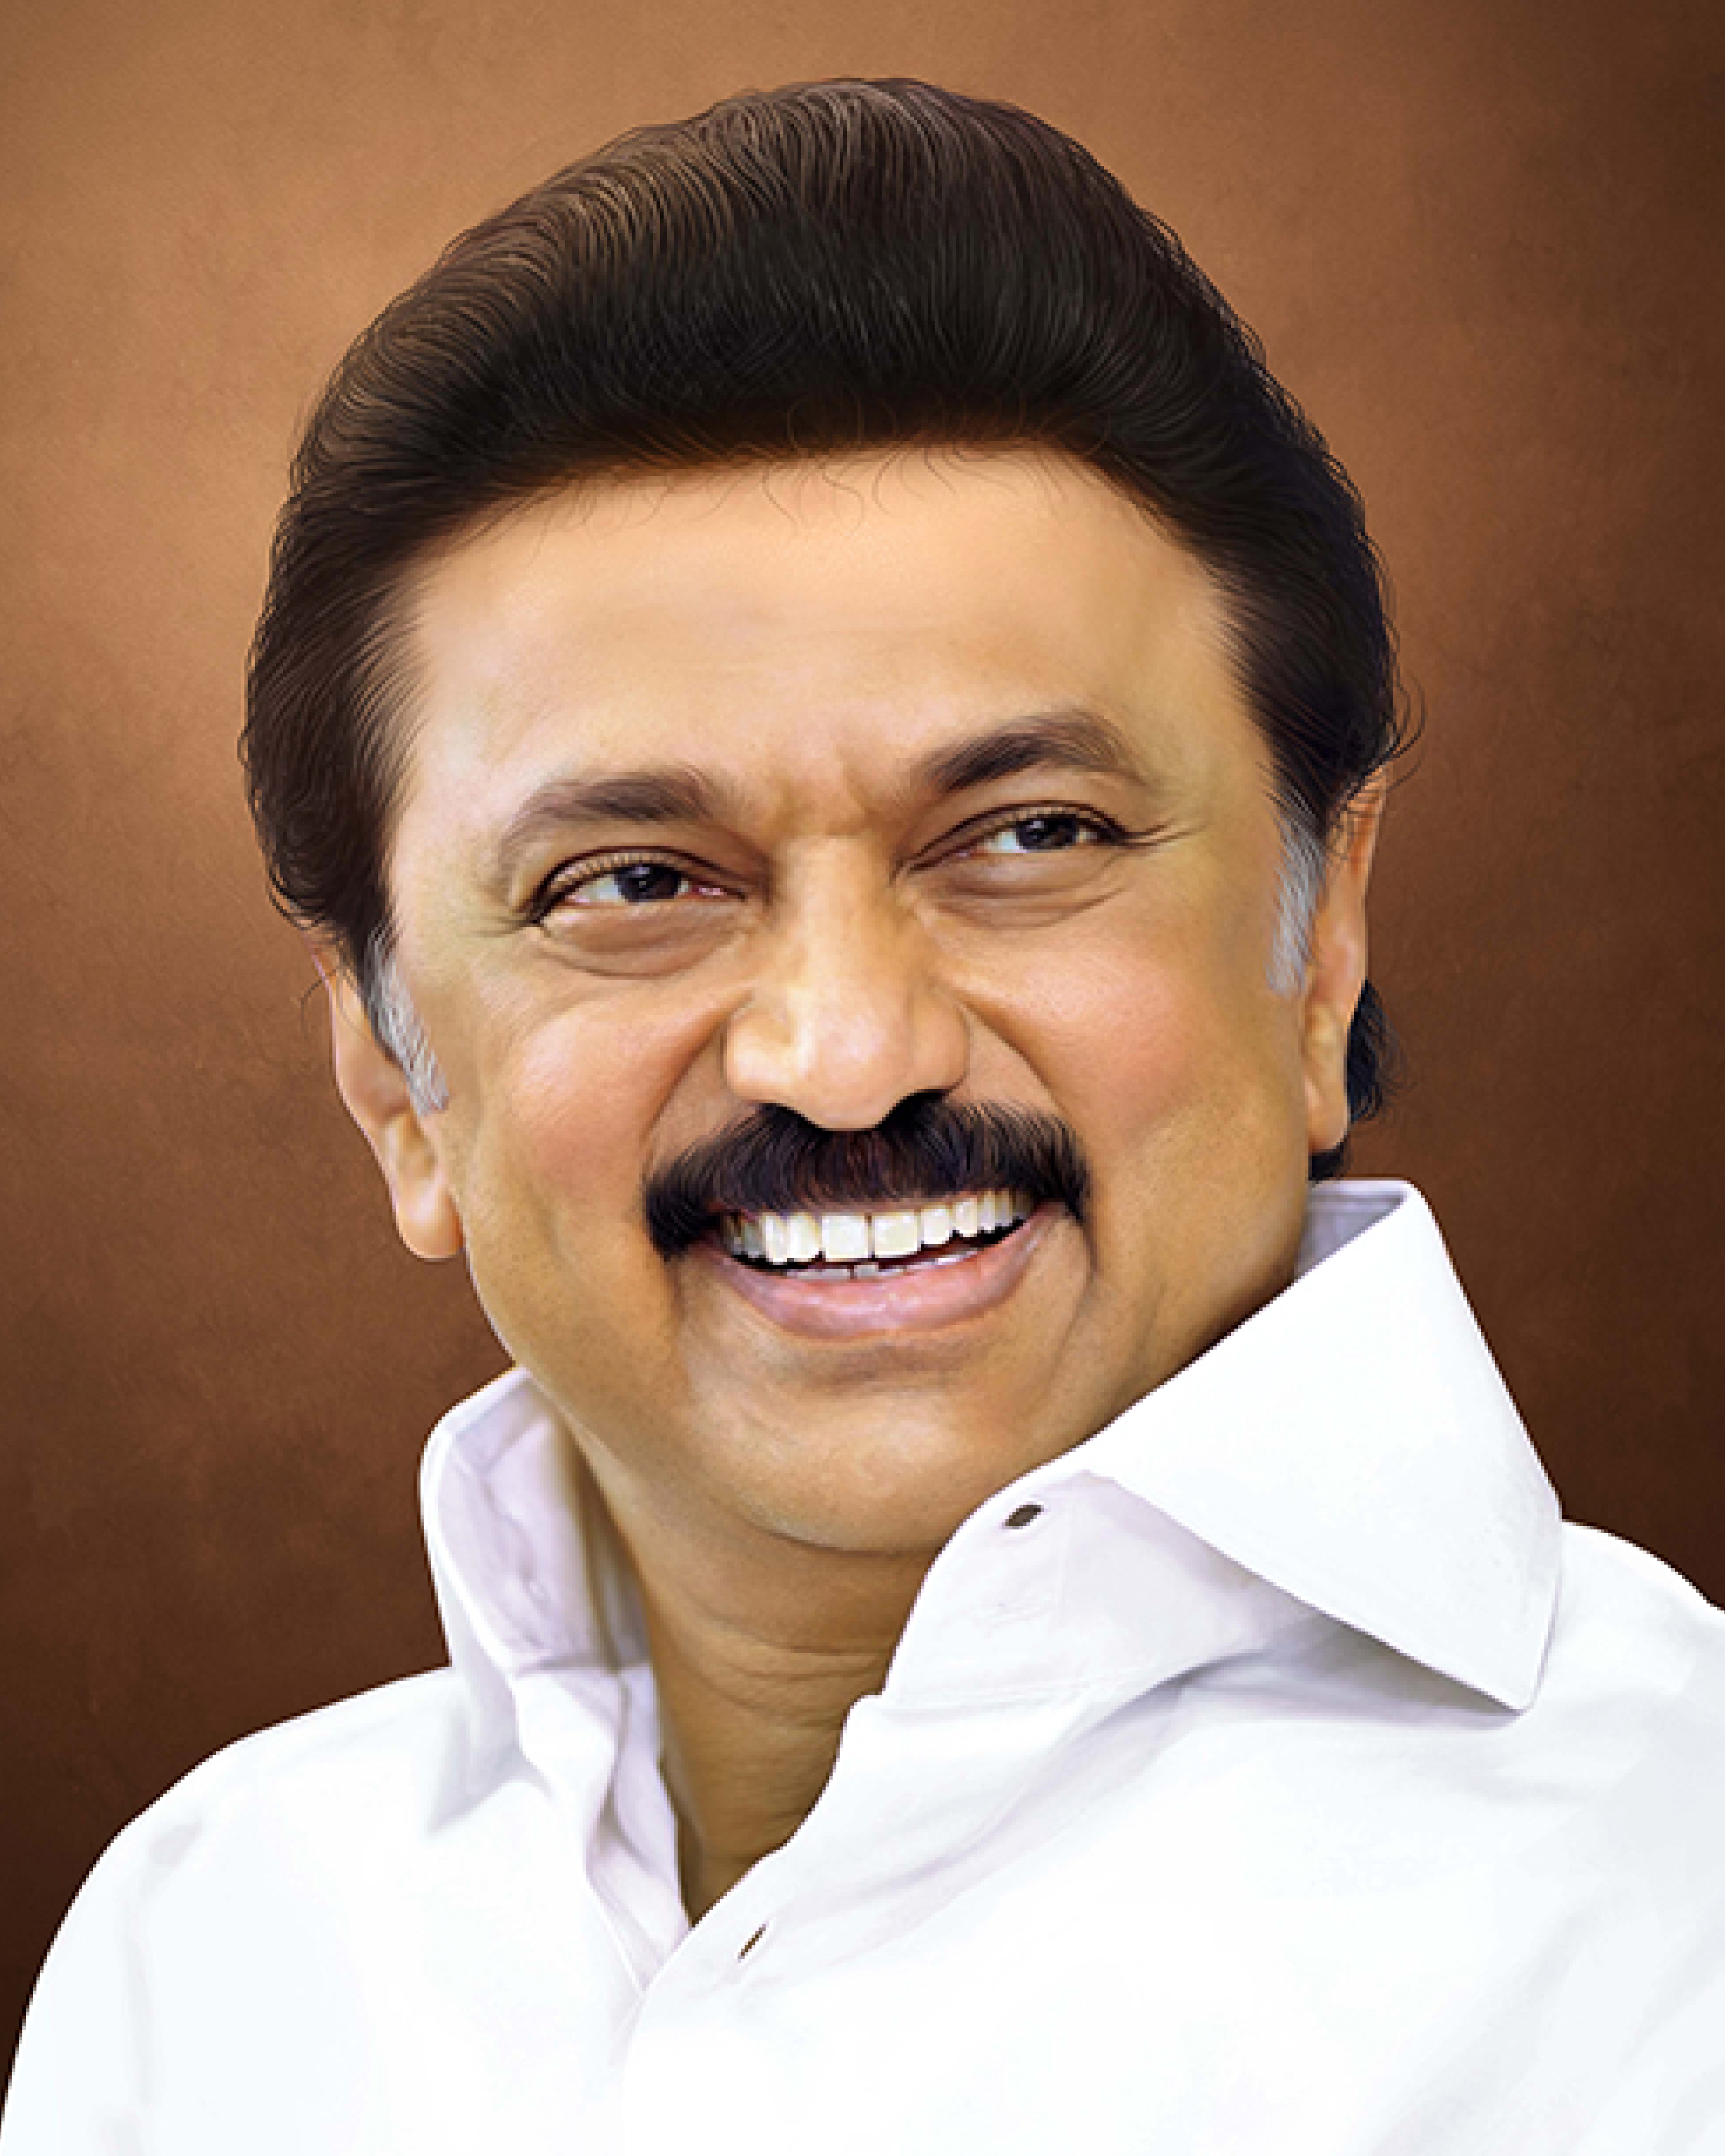 Minister tamil nadu chief Tamil Nadu